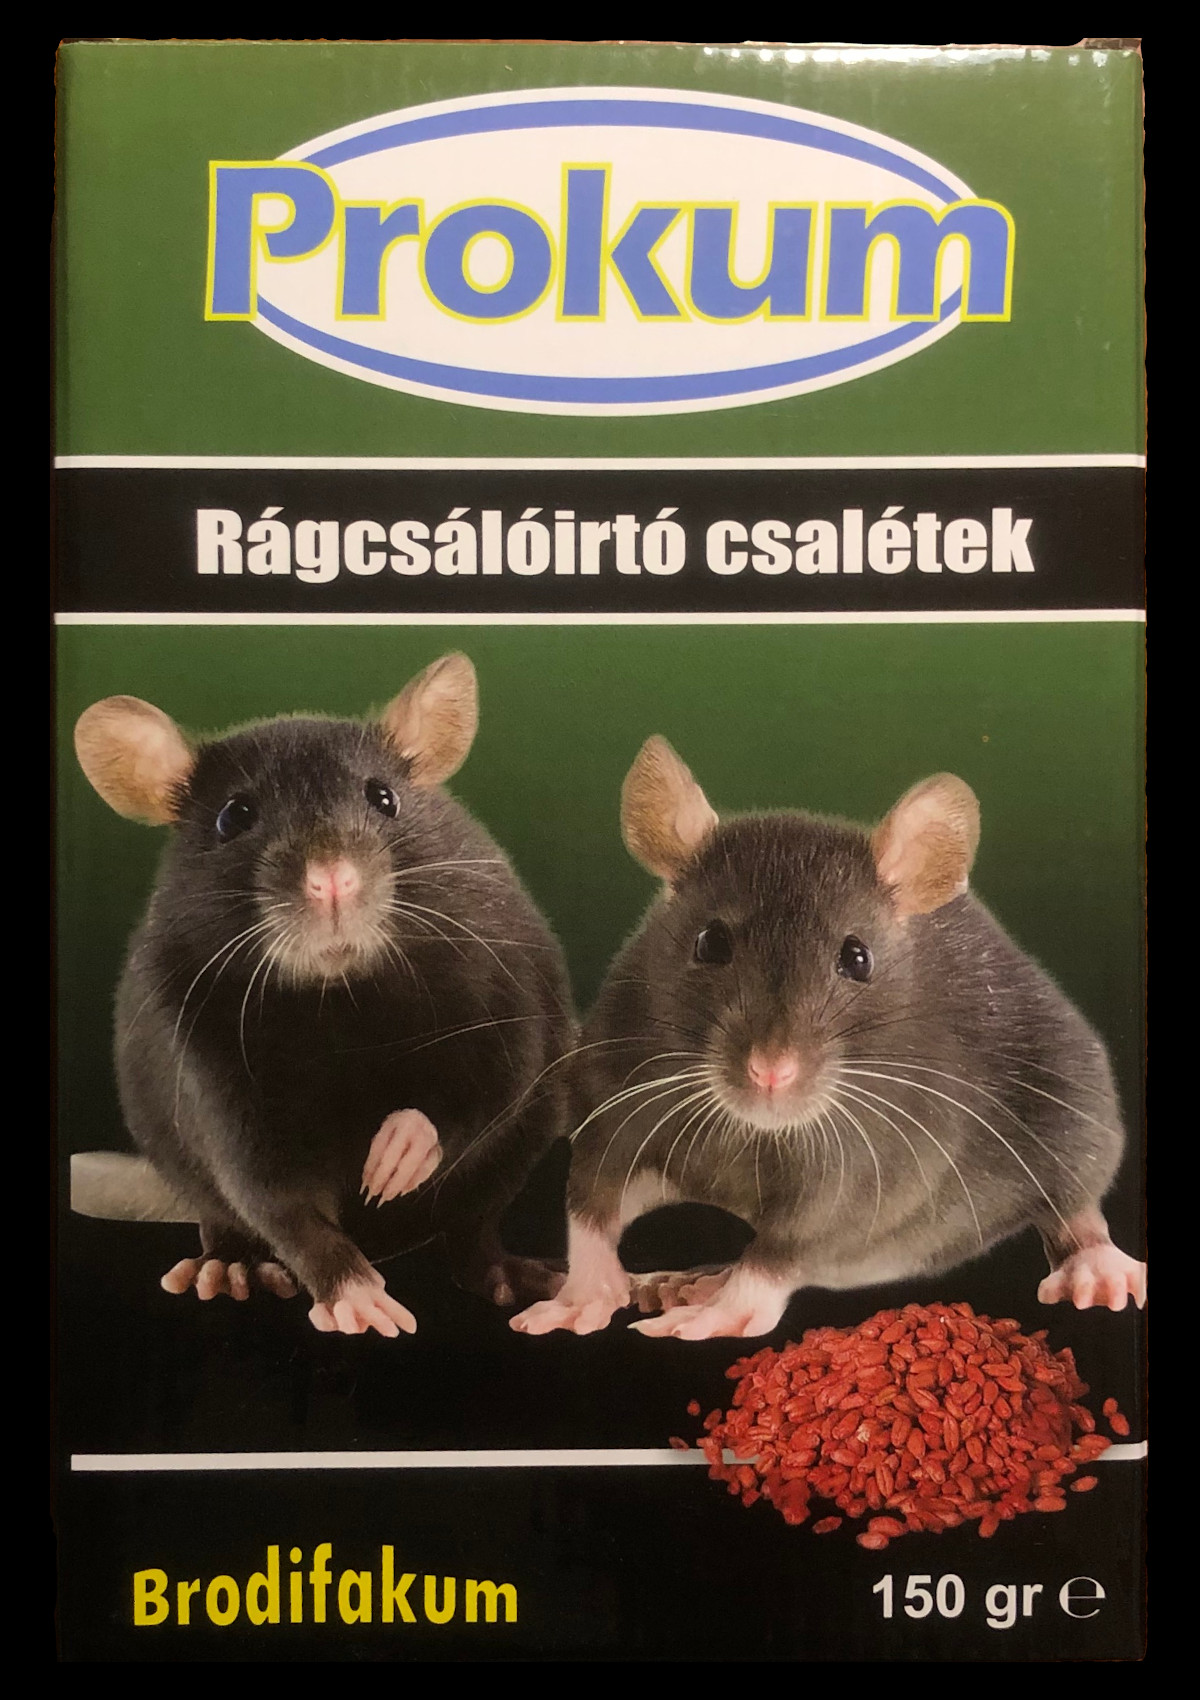 Prokum rágcsálóirtó csalétek 150g - szemes patkányméreg